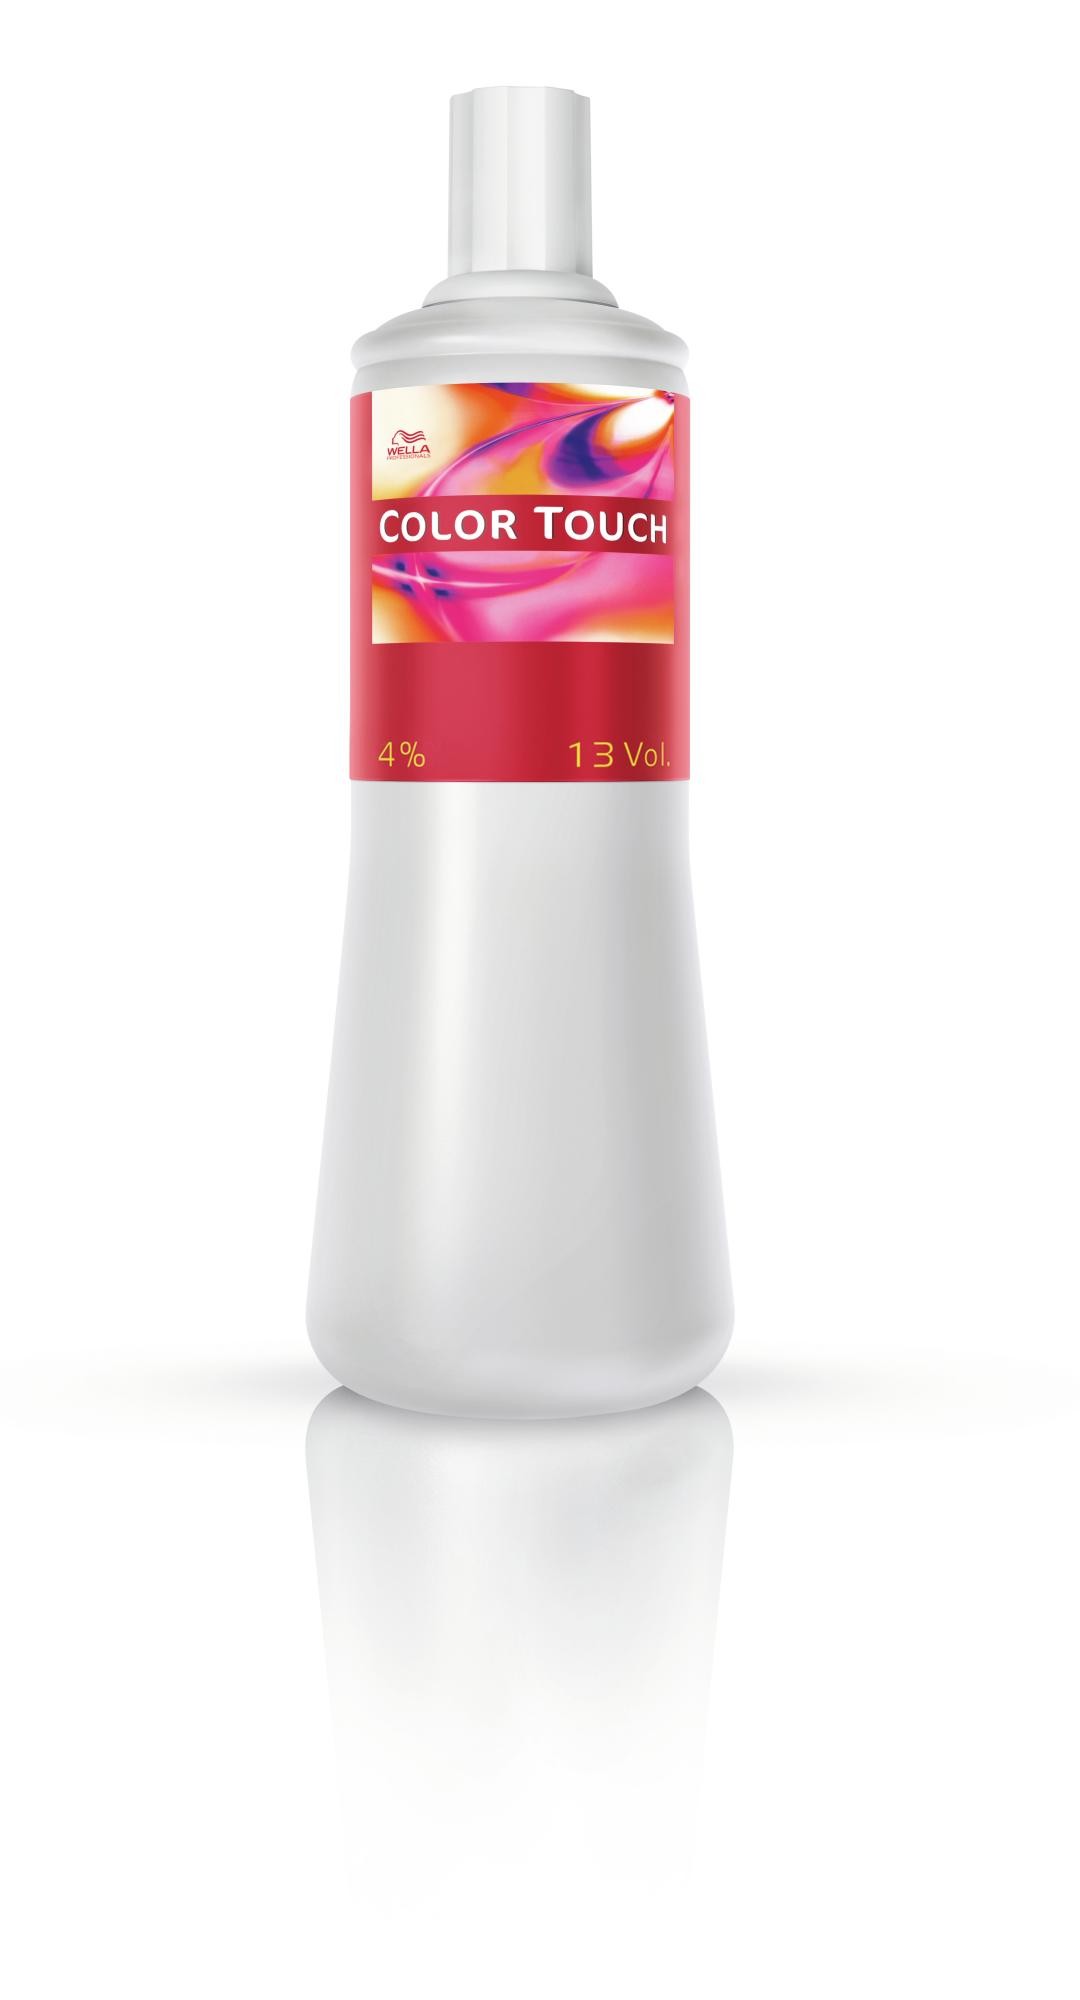 Wella Color Touch Emulsione 13 vol 4% 1L